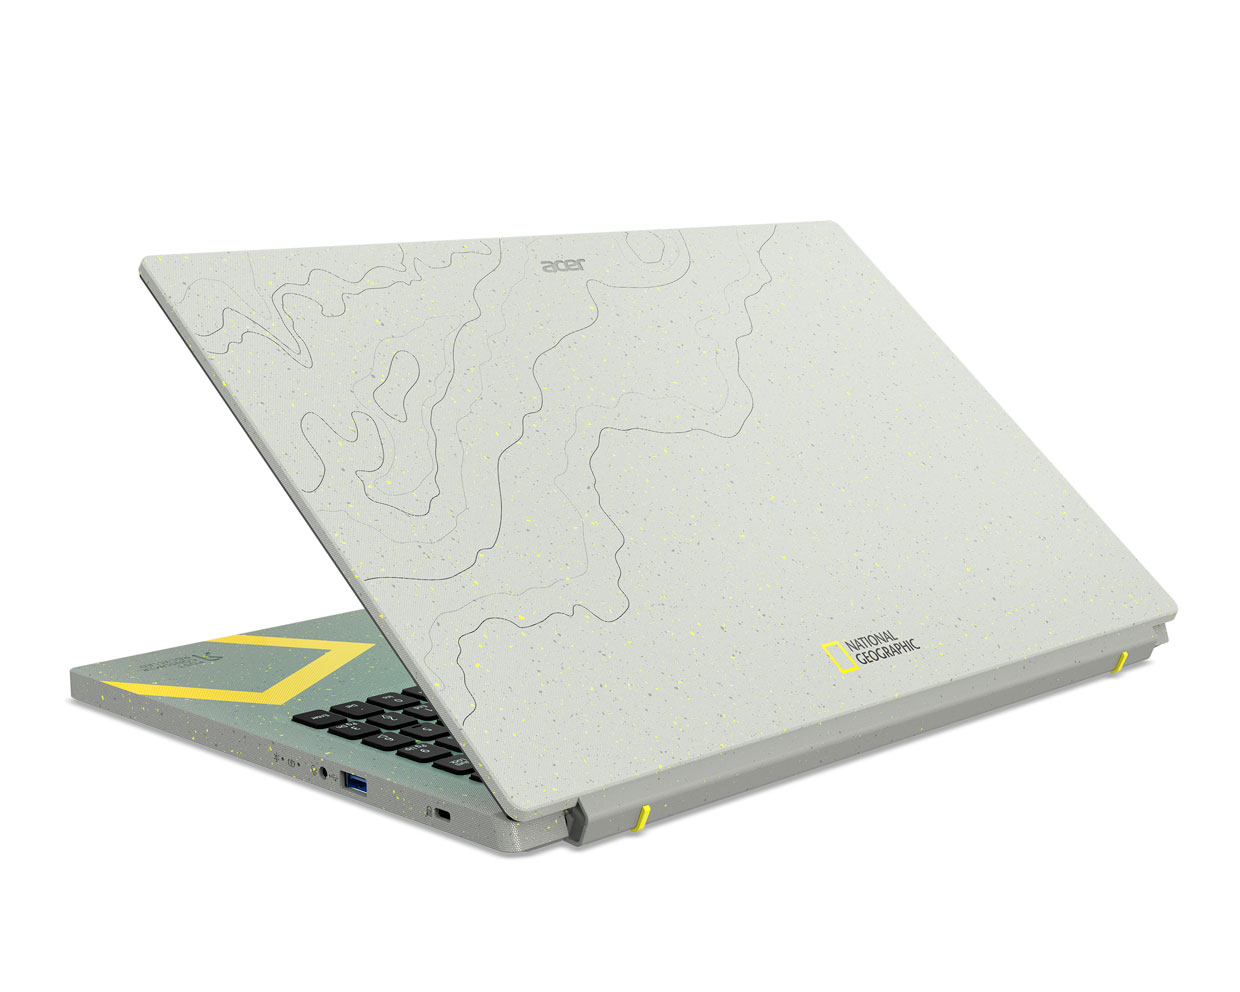 Acer anuncia la Aspire Vero National Geographic Edition